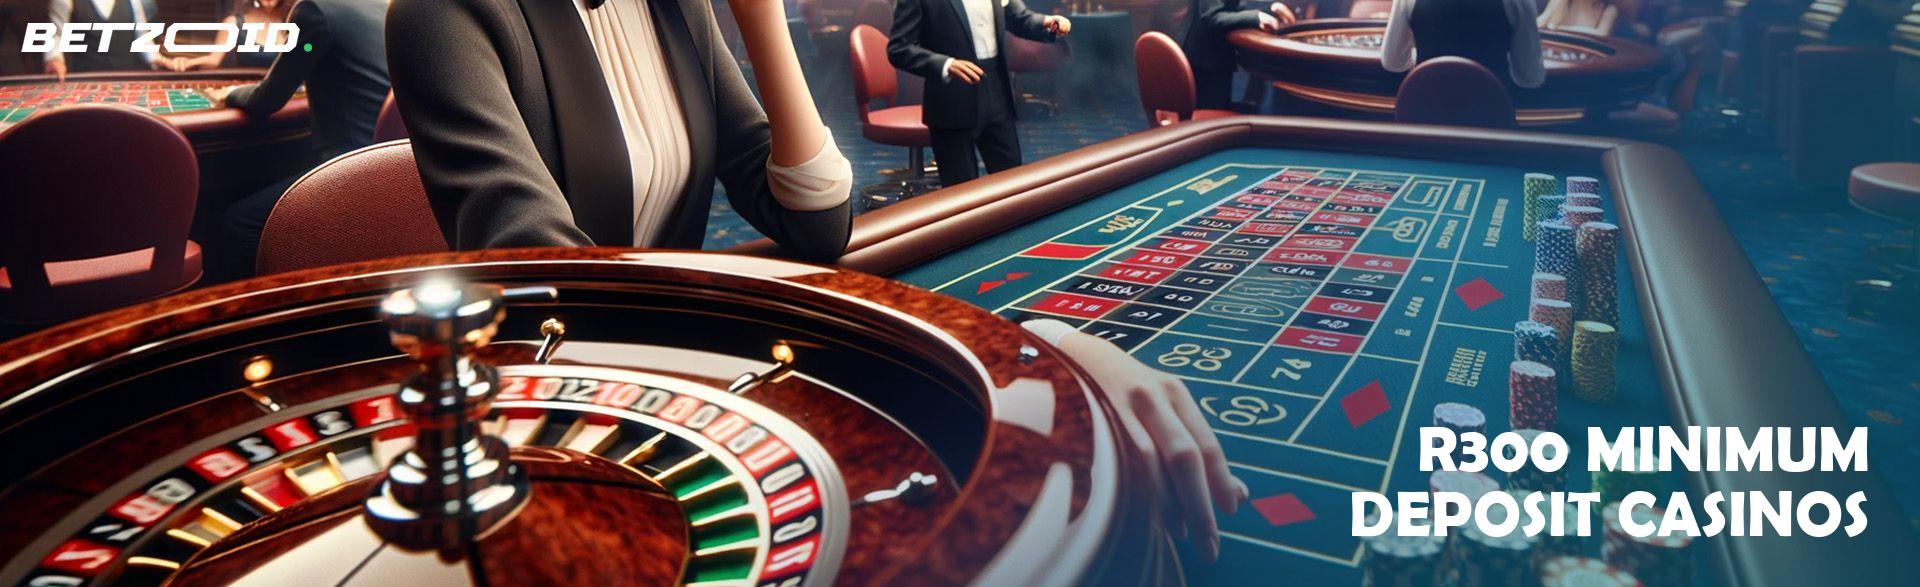 R300 Minimum Deposit Casinos.